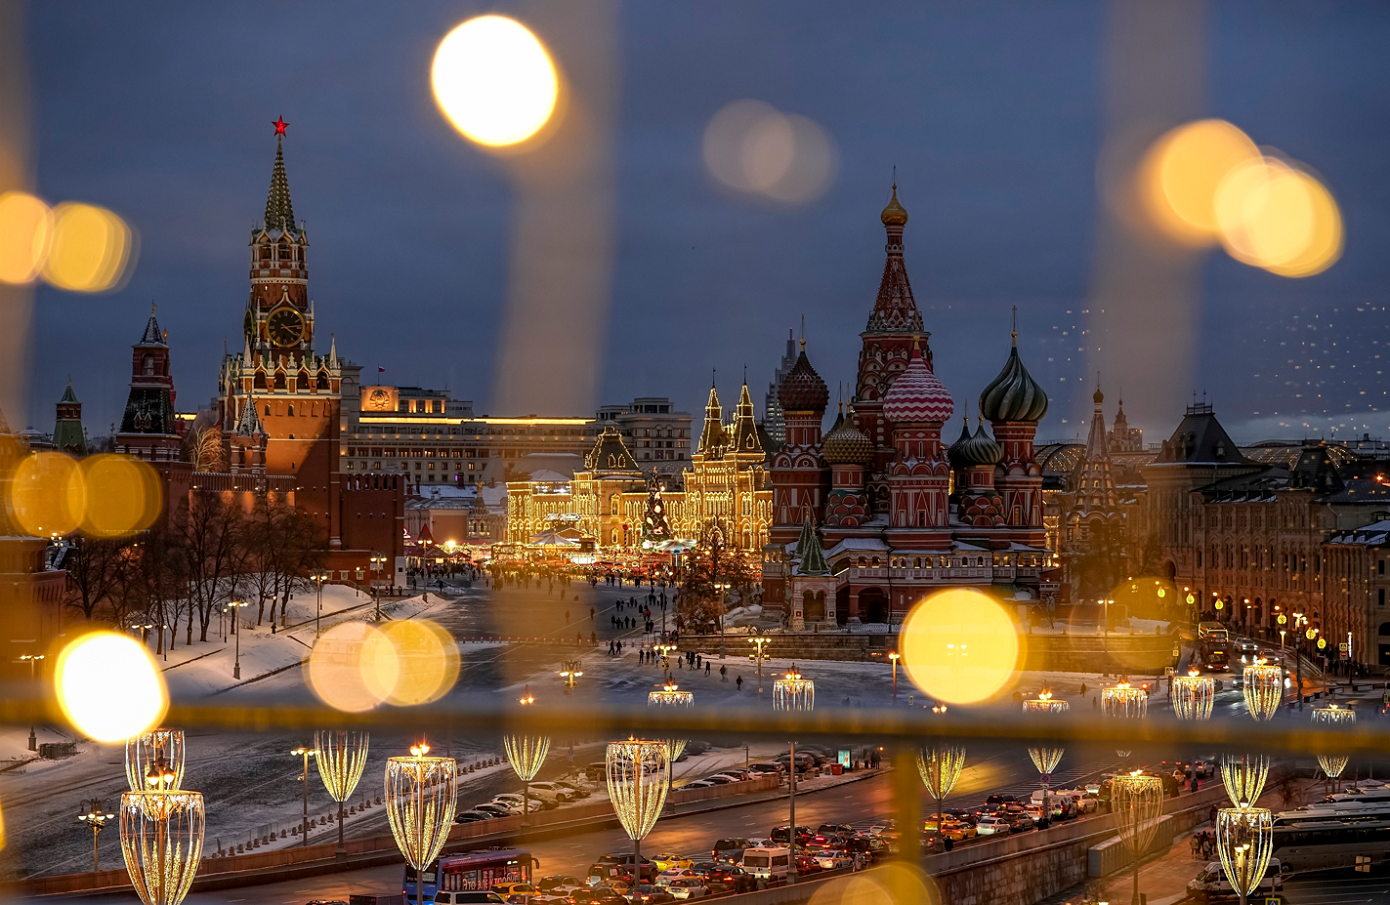 Αλλάζει όνομα η «Πλατεία Ευρώπης» στη Μόσχα και μετονομάζεται σε «Πλατεία Ευρασίας»